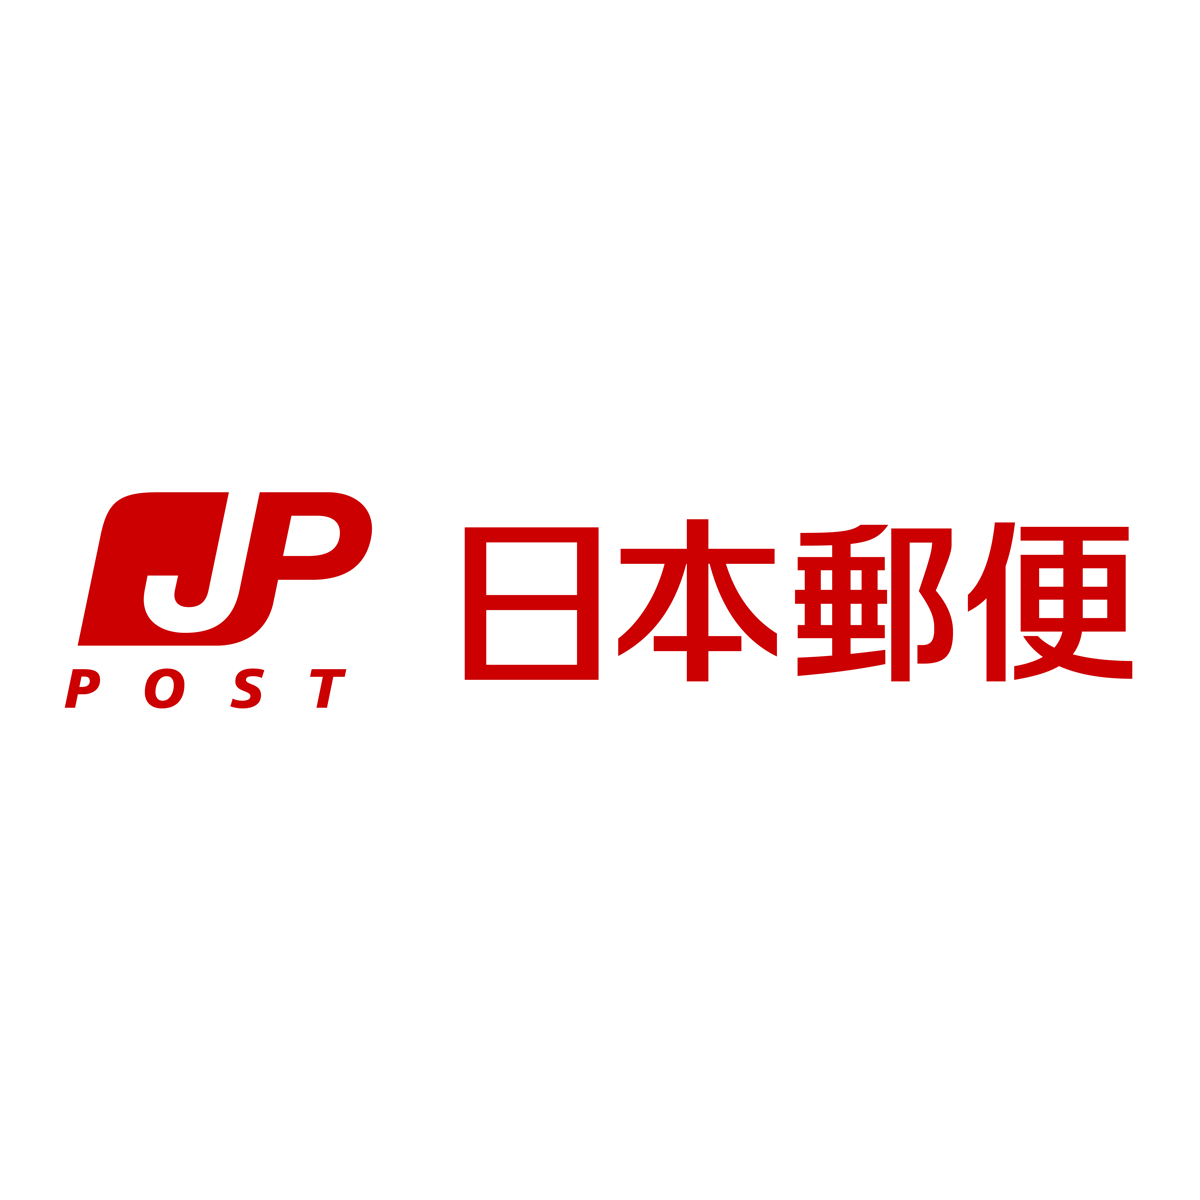 システムメンテナンスのお知らせ 日本郵便